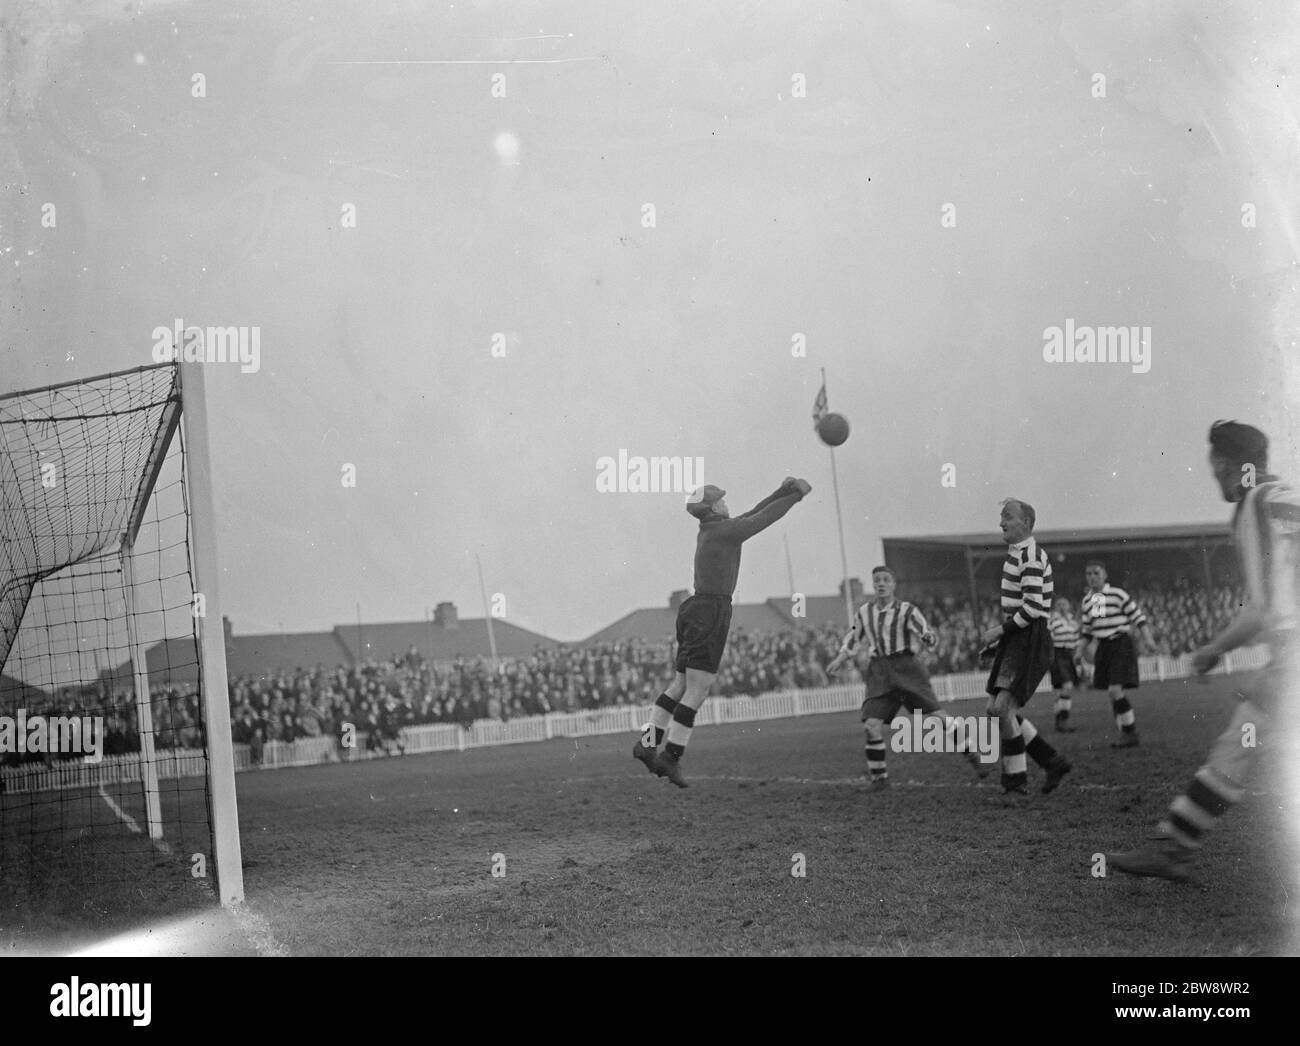 Dartford gegen Darlington Fußballspiel. Aktion vor dem Tor, macht der Torwart eine spektakuläre speichern. 1937 Stockfoto